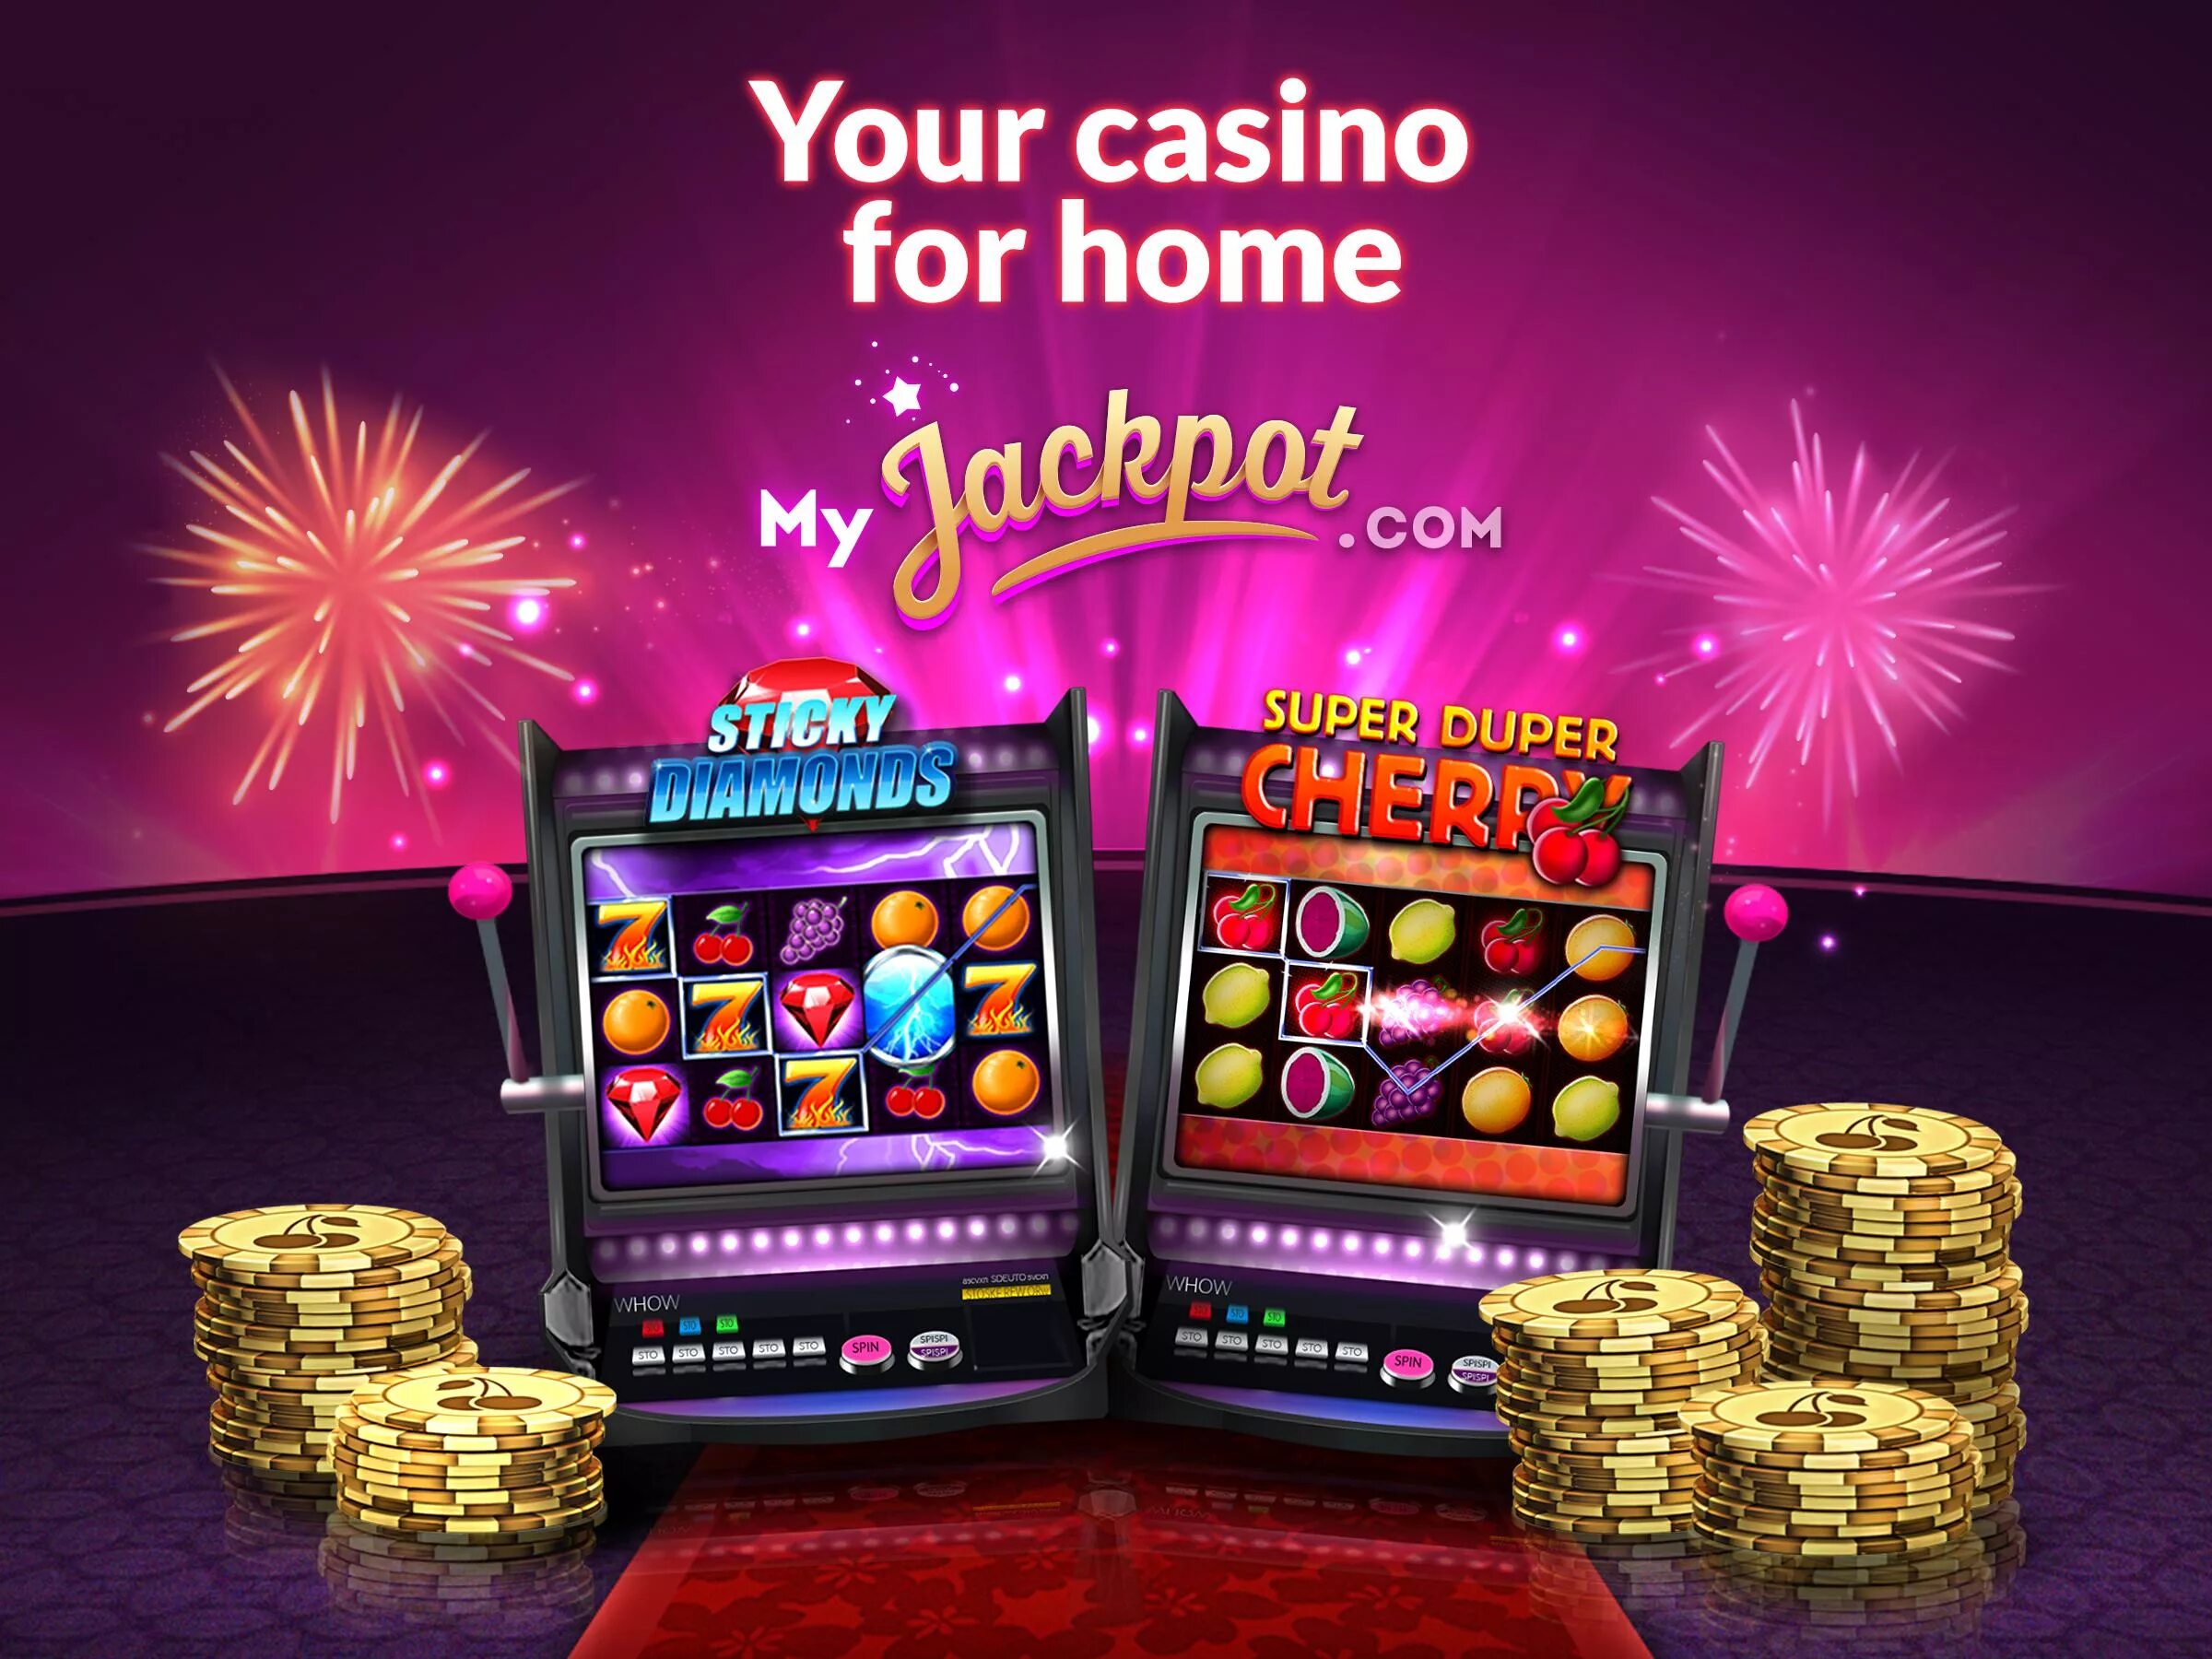 Слоты casino versus fun. Зал игровых автоматов джекпот. Слоты казино. Интернет казино.